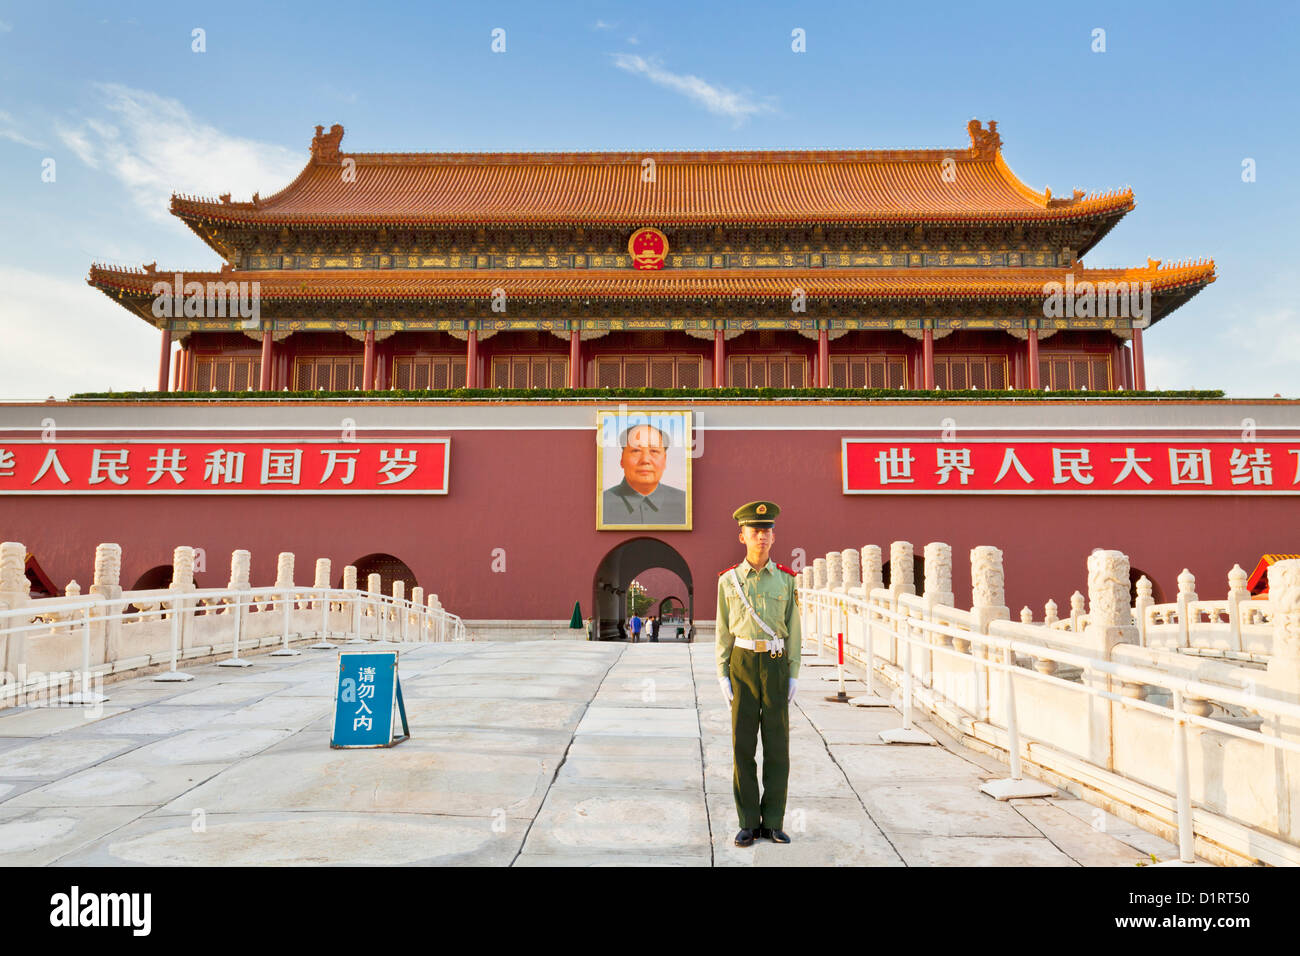 Soldat chinois Tour Tiananmen garde sous le portrait du président Mao, porte de la paix céleste Asie Chine Beijing Banque D'Images